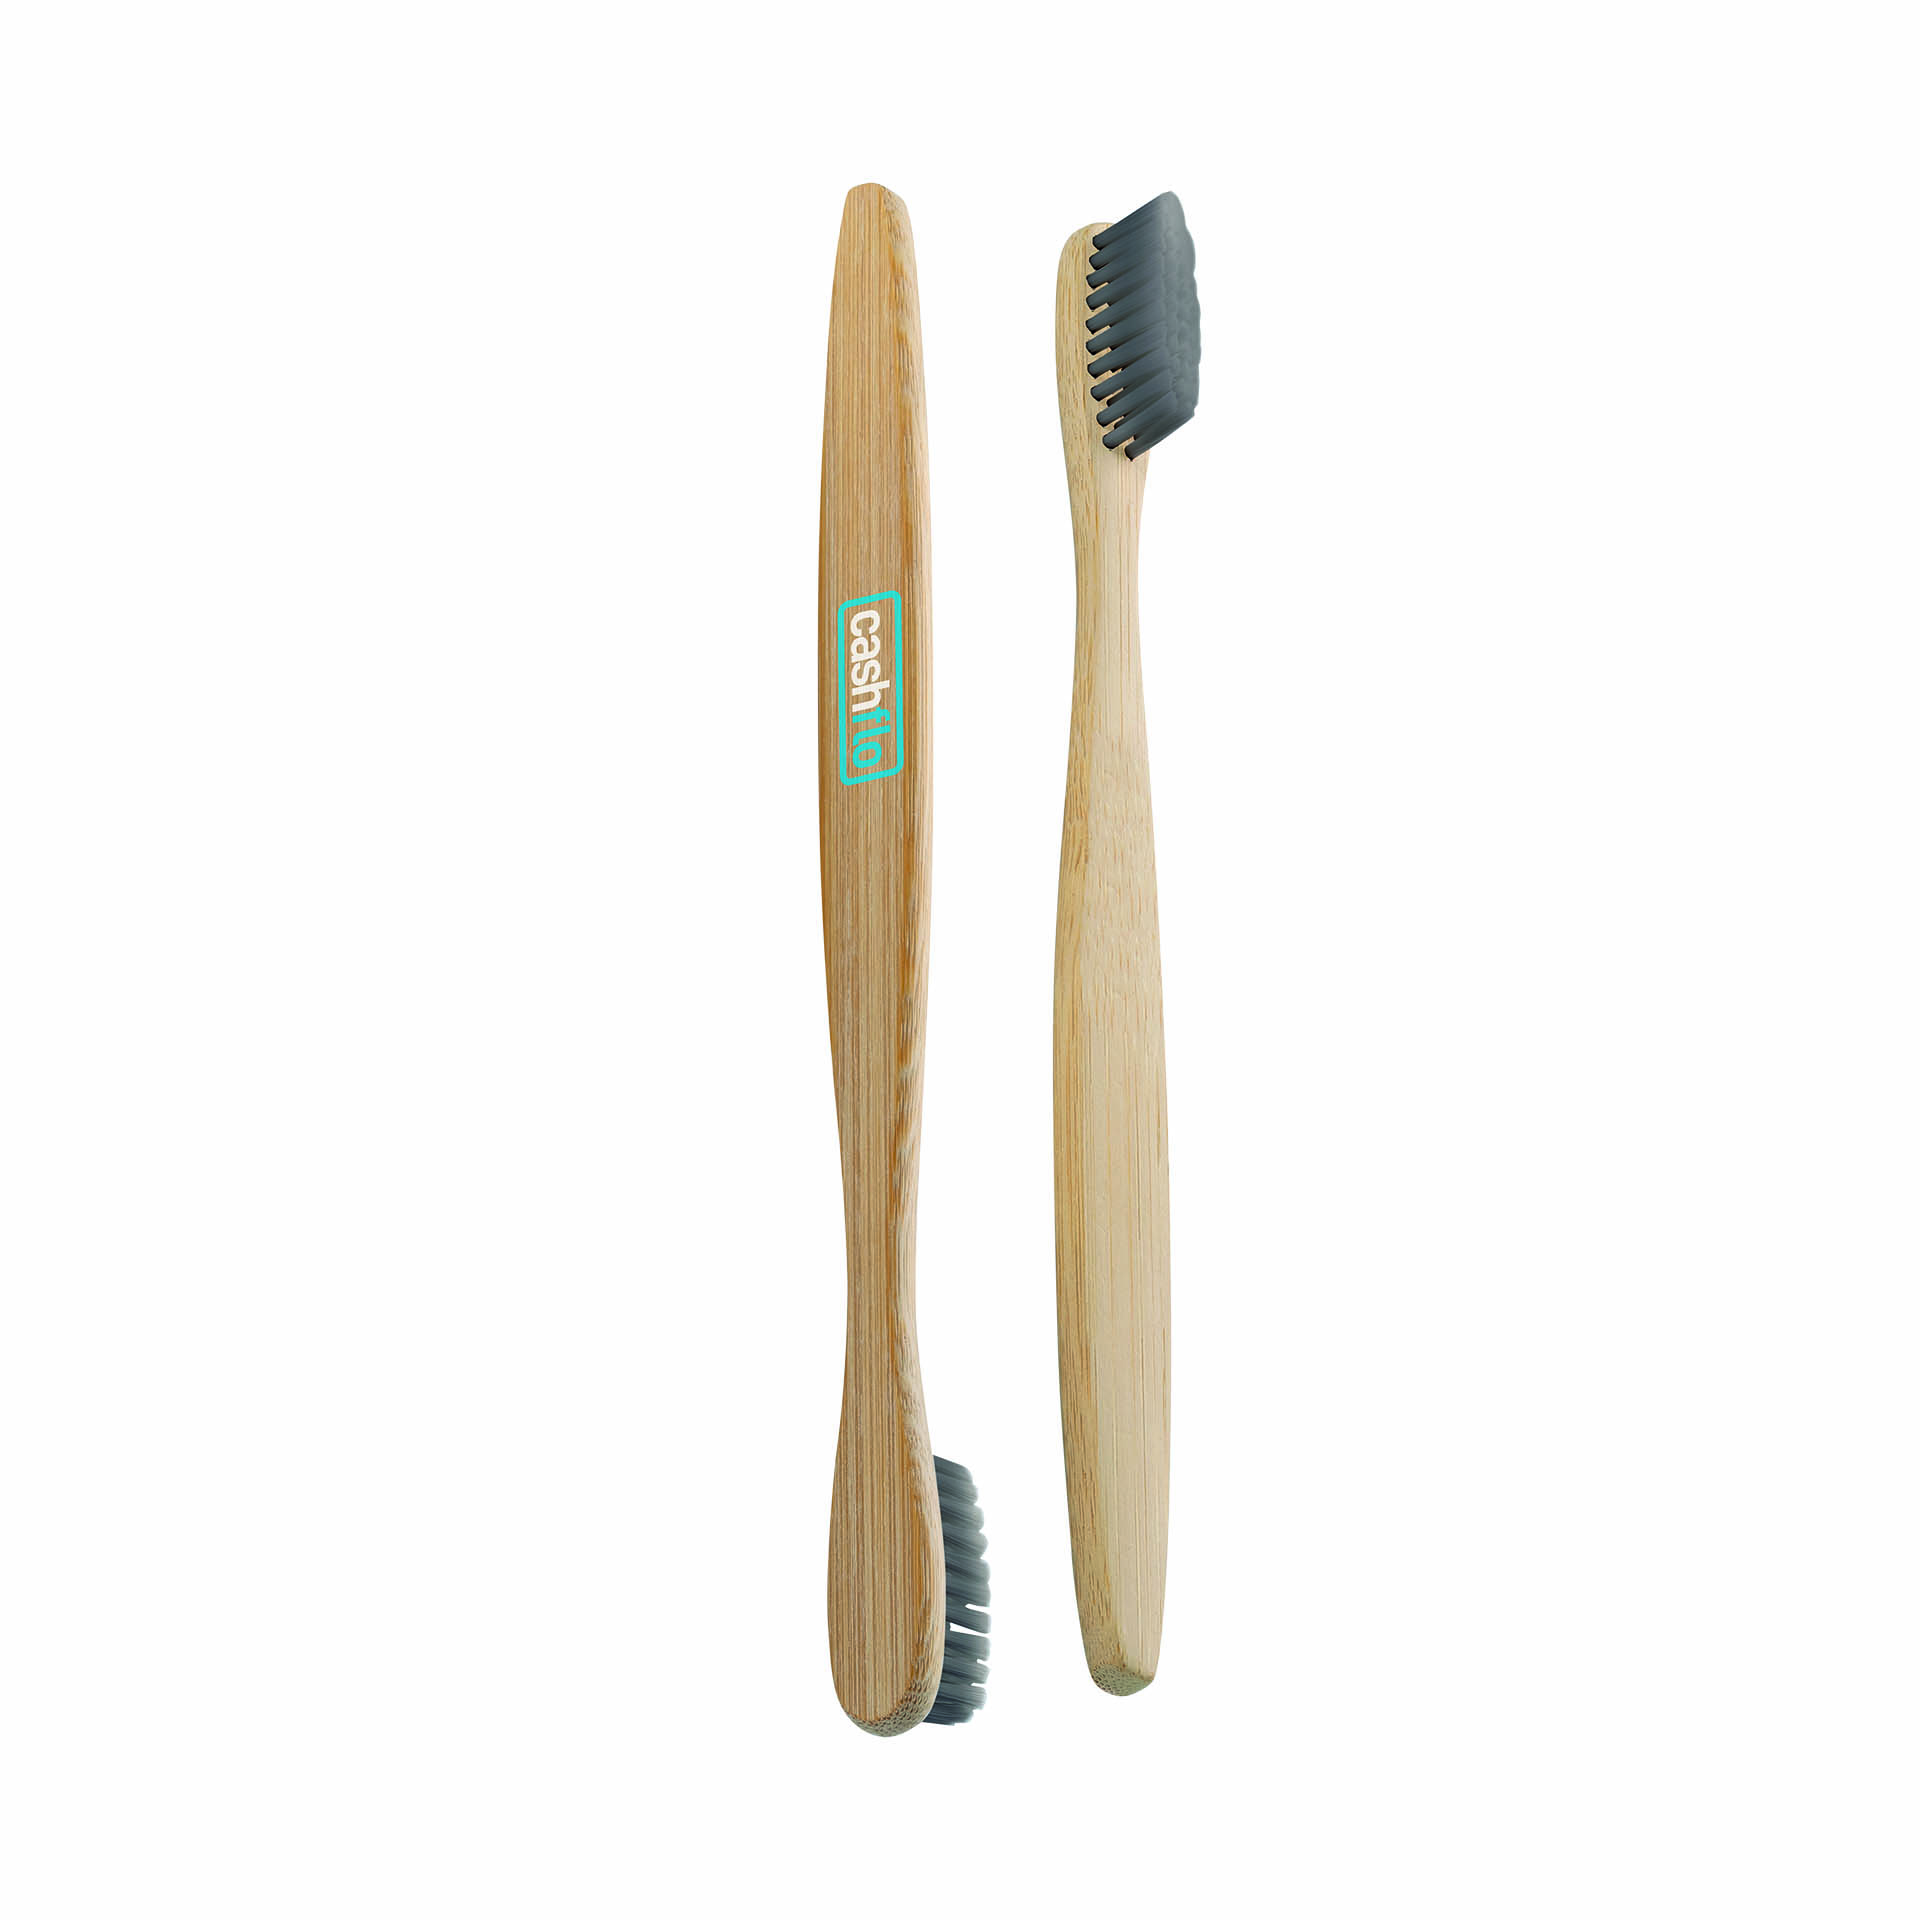 Umweltfreundliche Zahnbürste aus nachhaltigem Bambus mit Kohle-Nylon-Borsten. Der Griff ist zu 100% biologisch abbaubar.